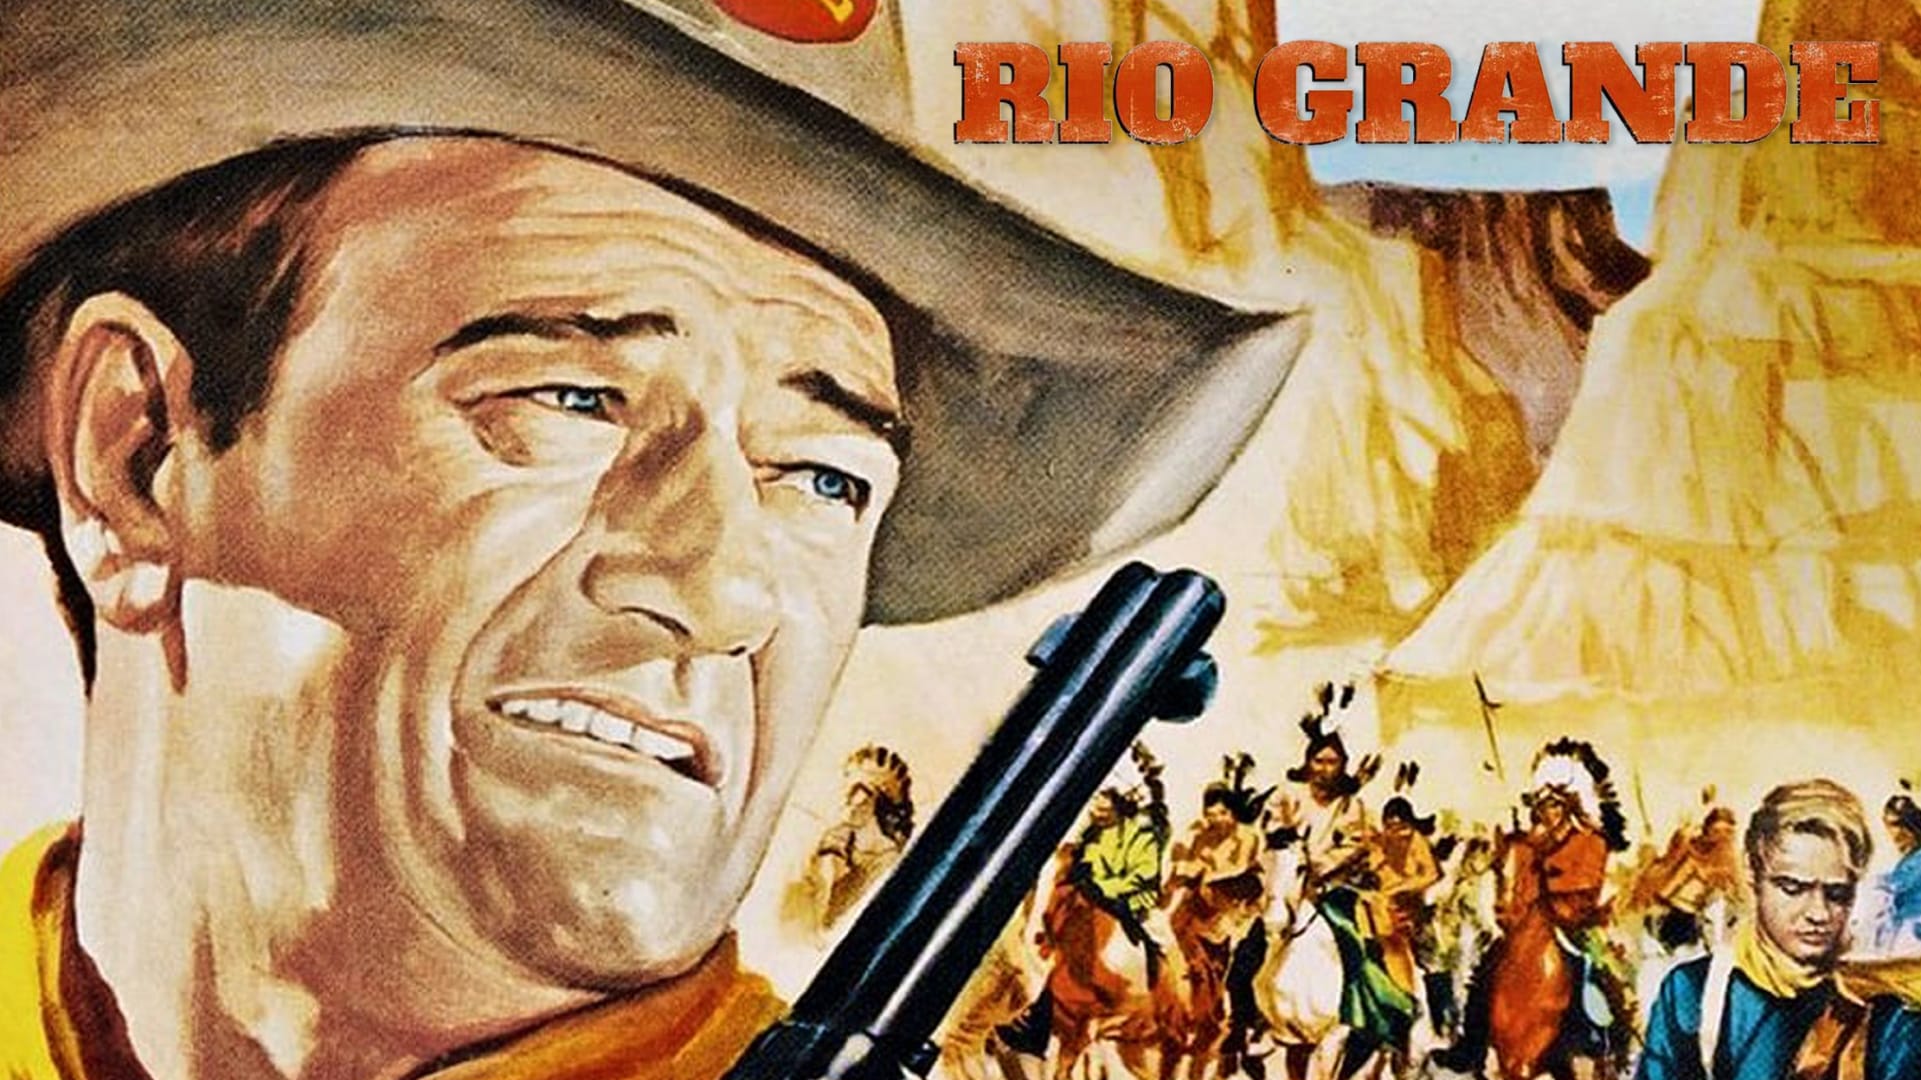 La recensione di Rio Bravo, con John Wayne